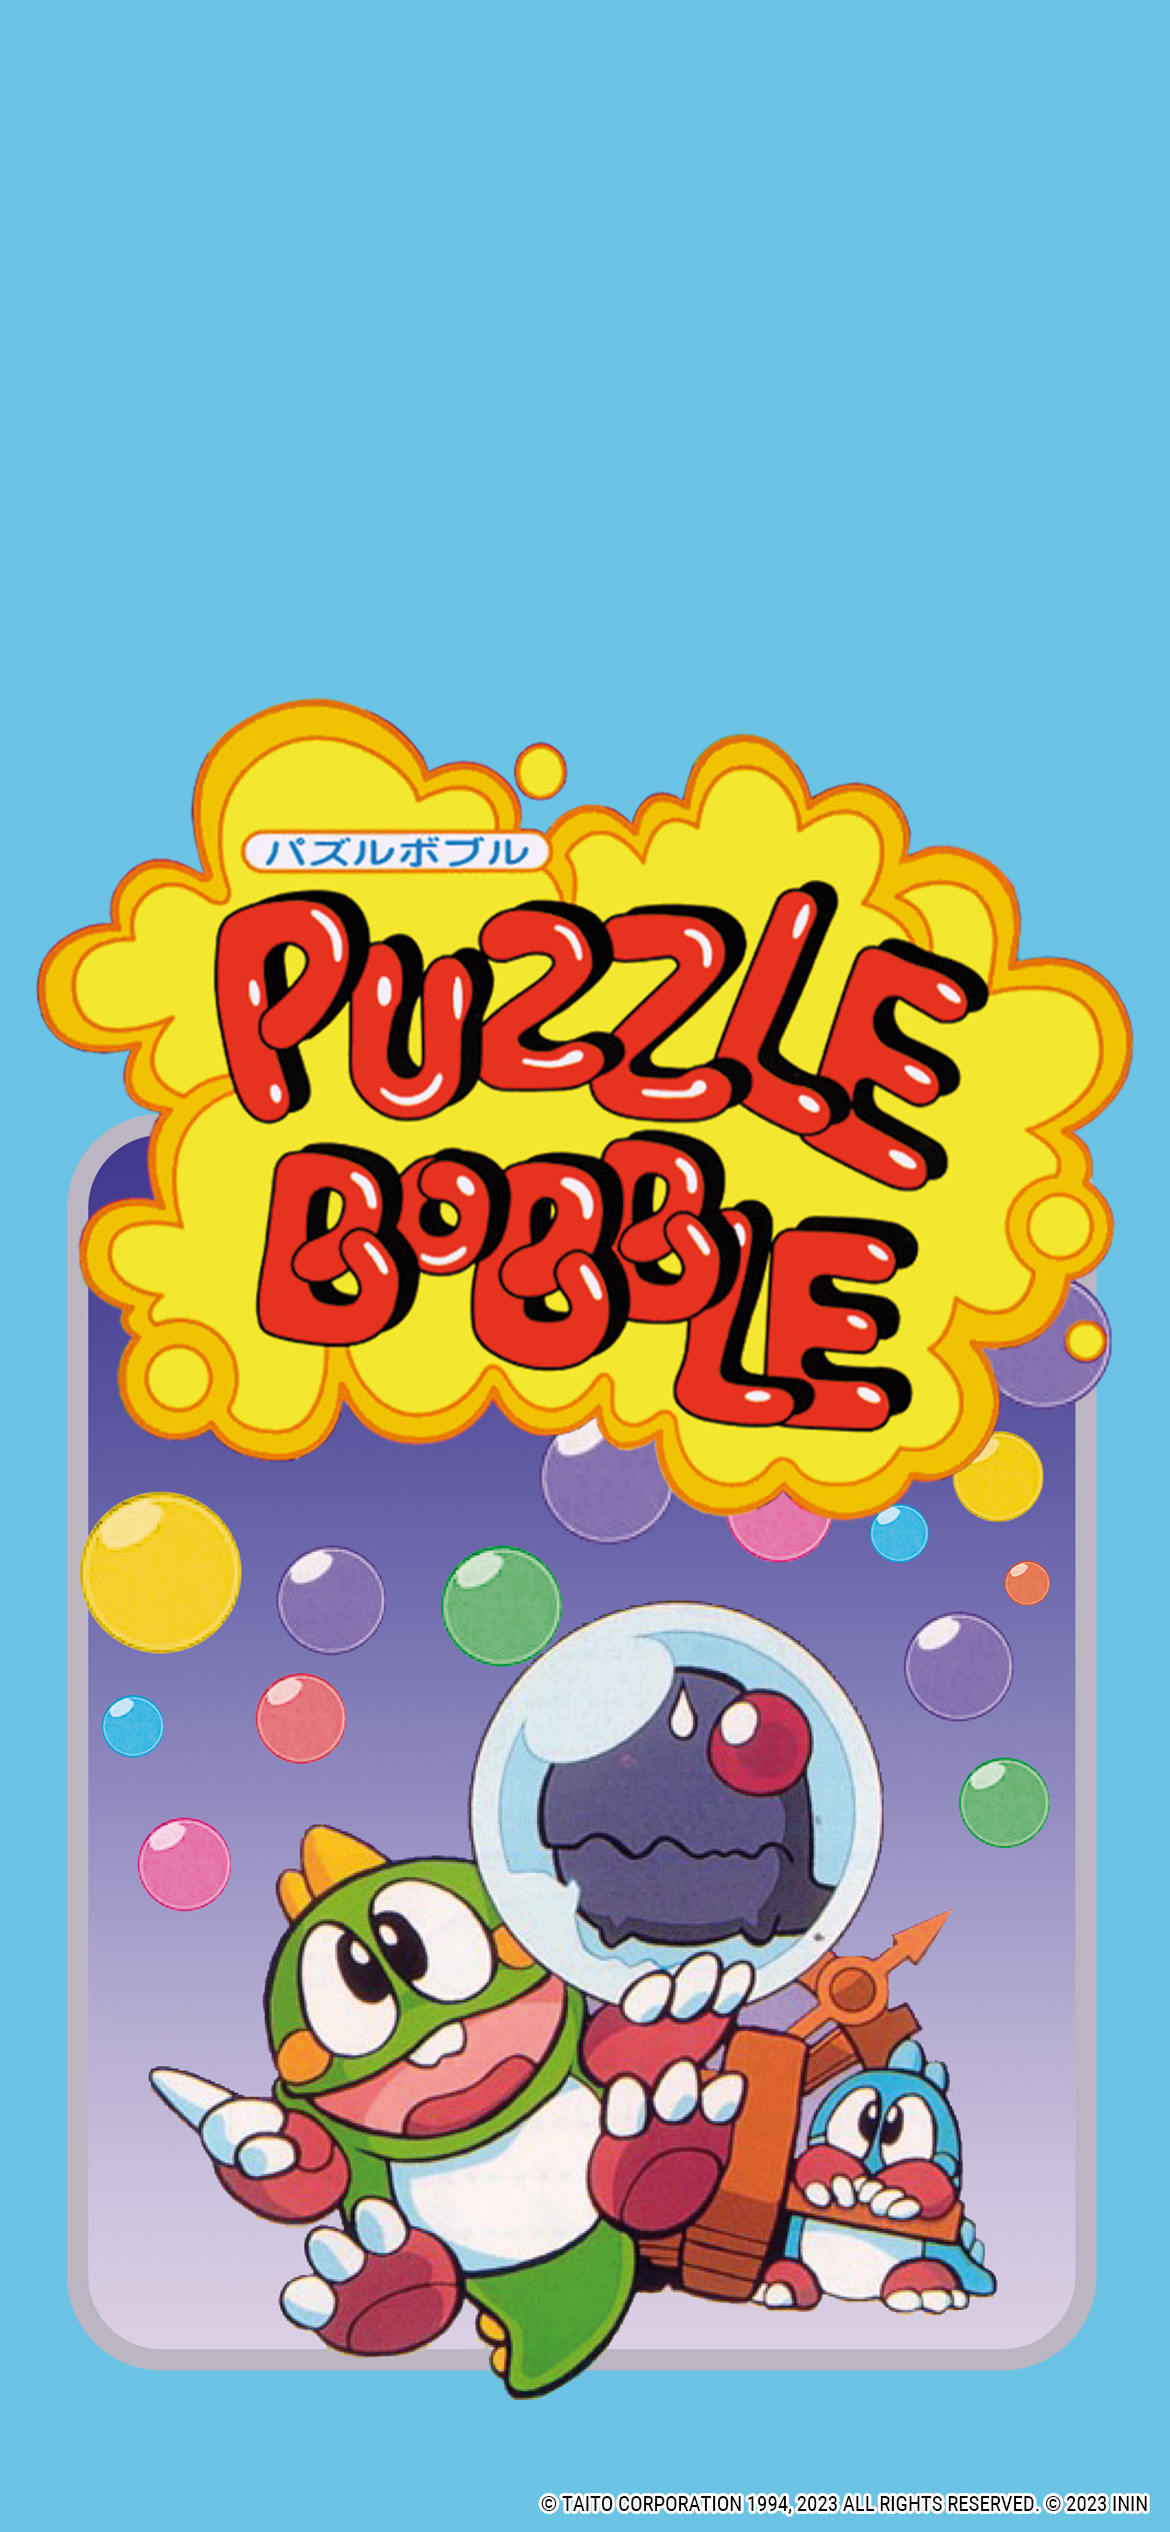 Puzzle Bobble Everybubble! Chega na Próxima Semana - NerdCorner